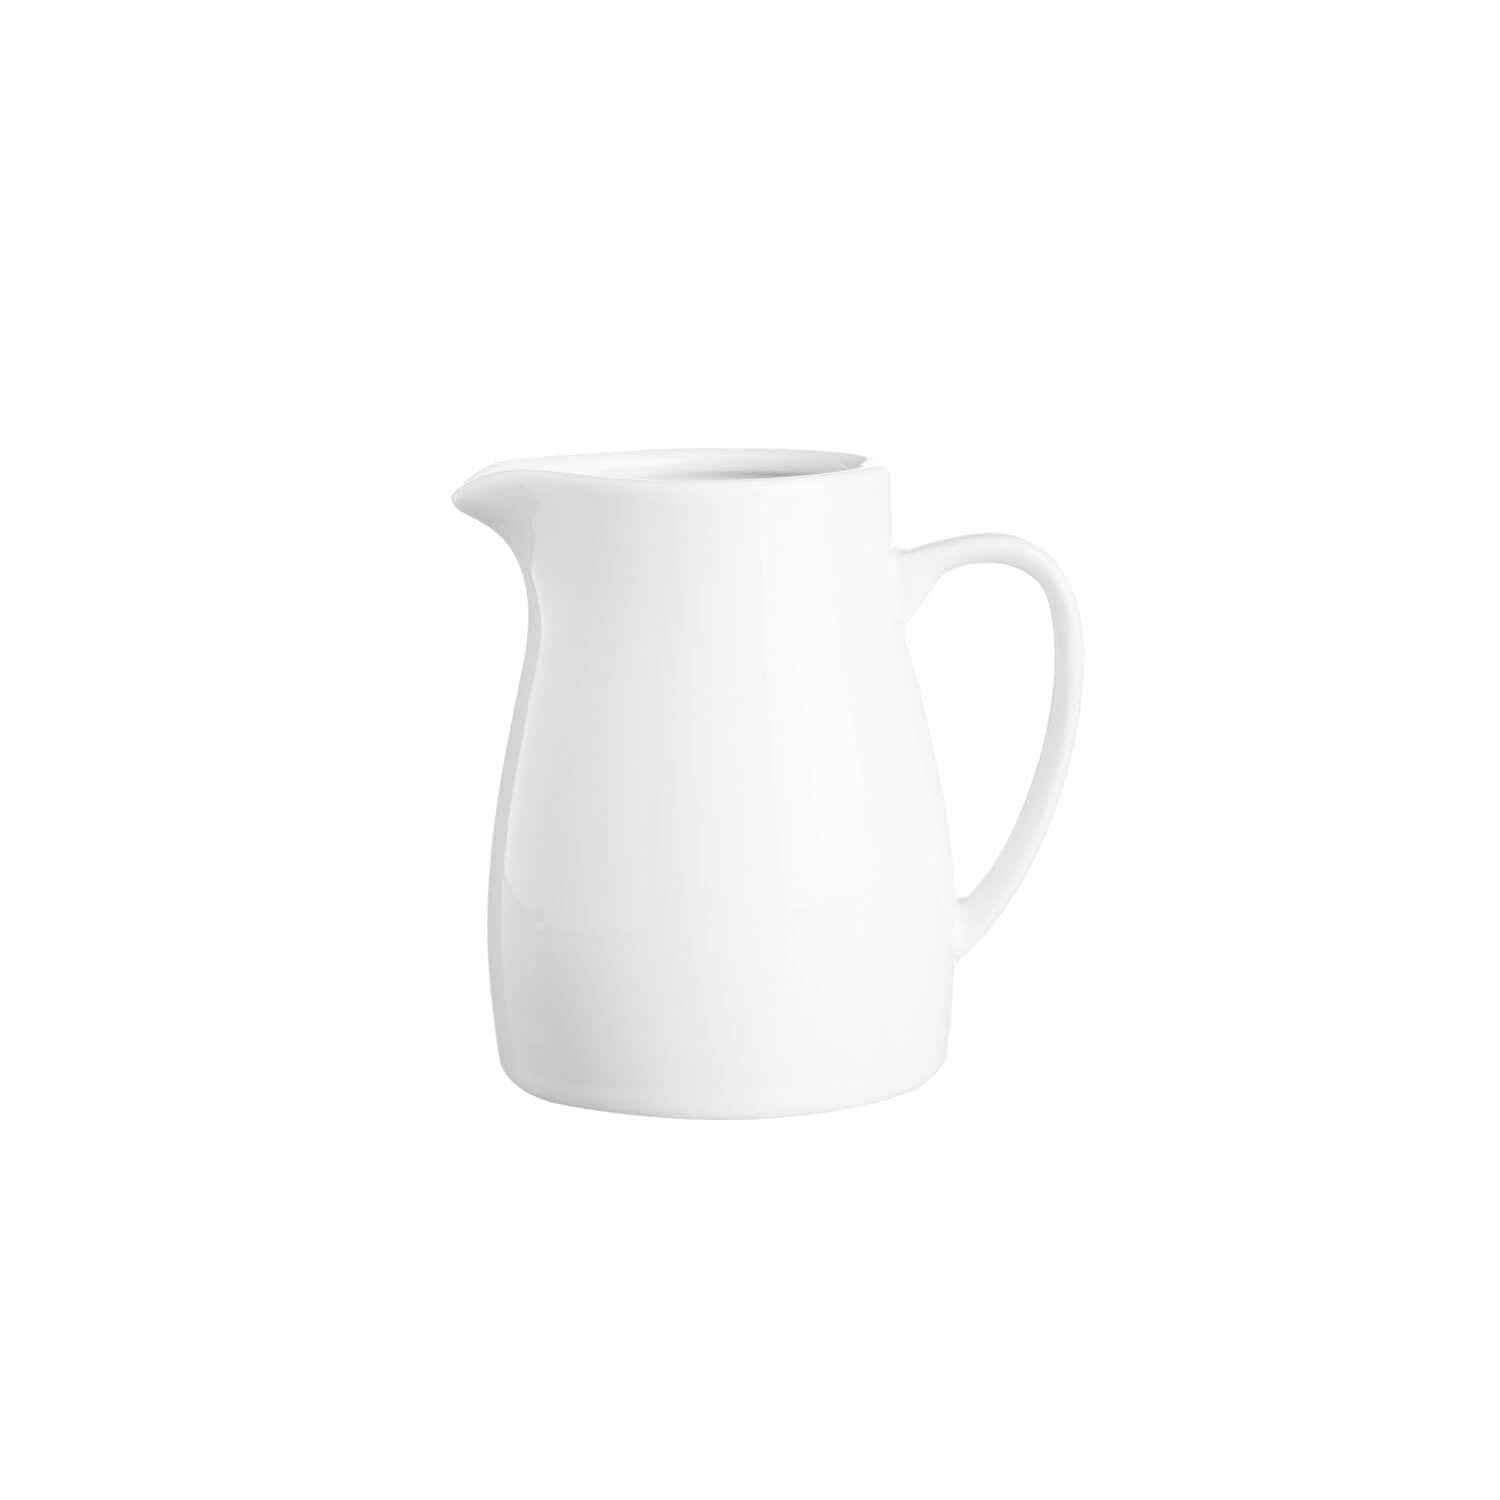 Simplicity Fine Porcelain Milk Jug